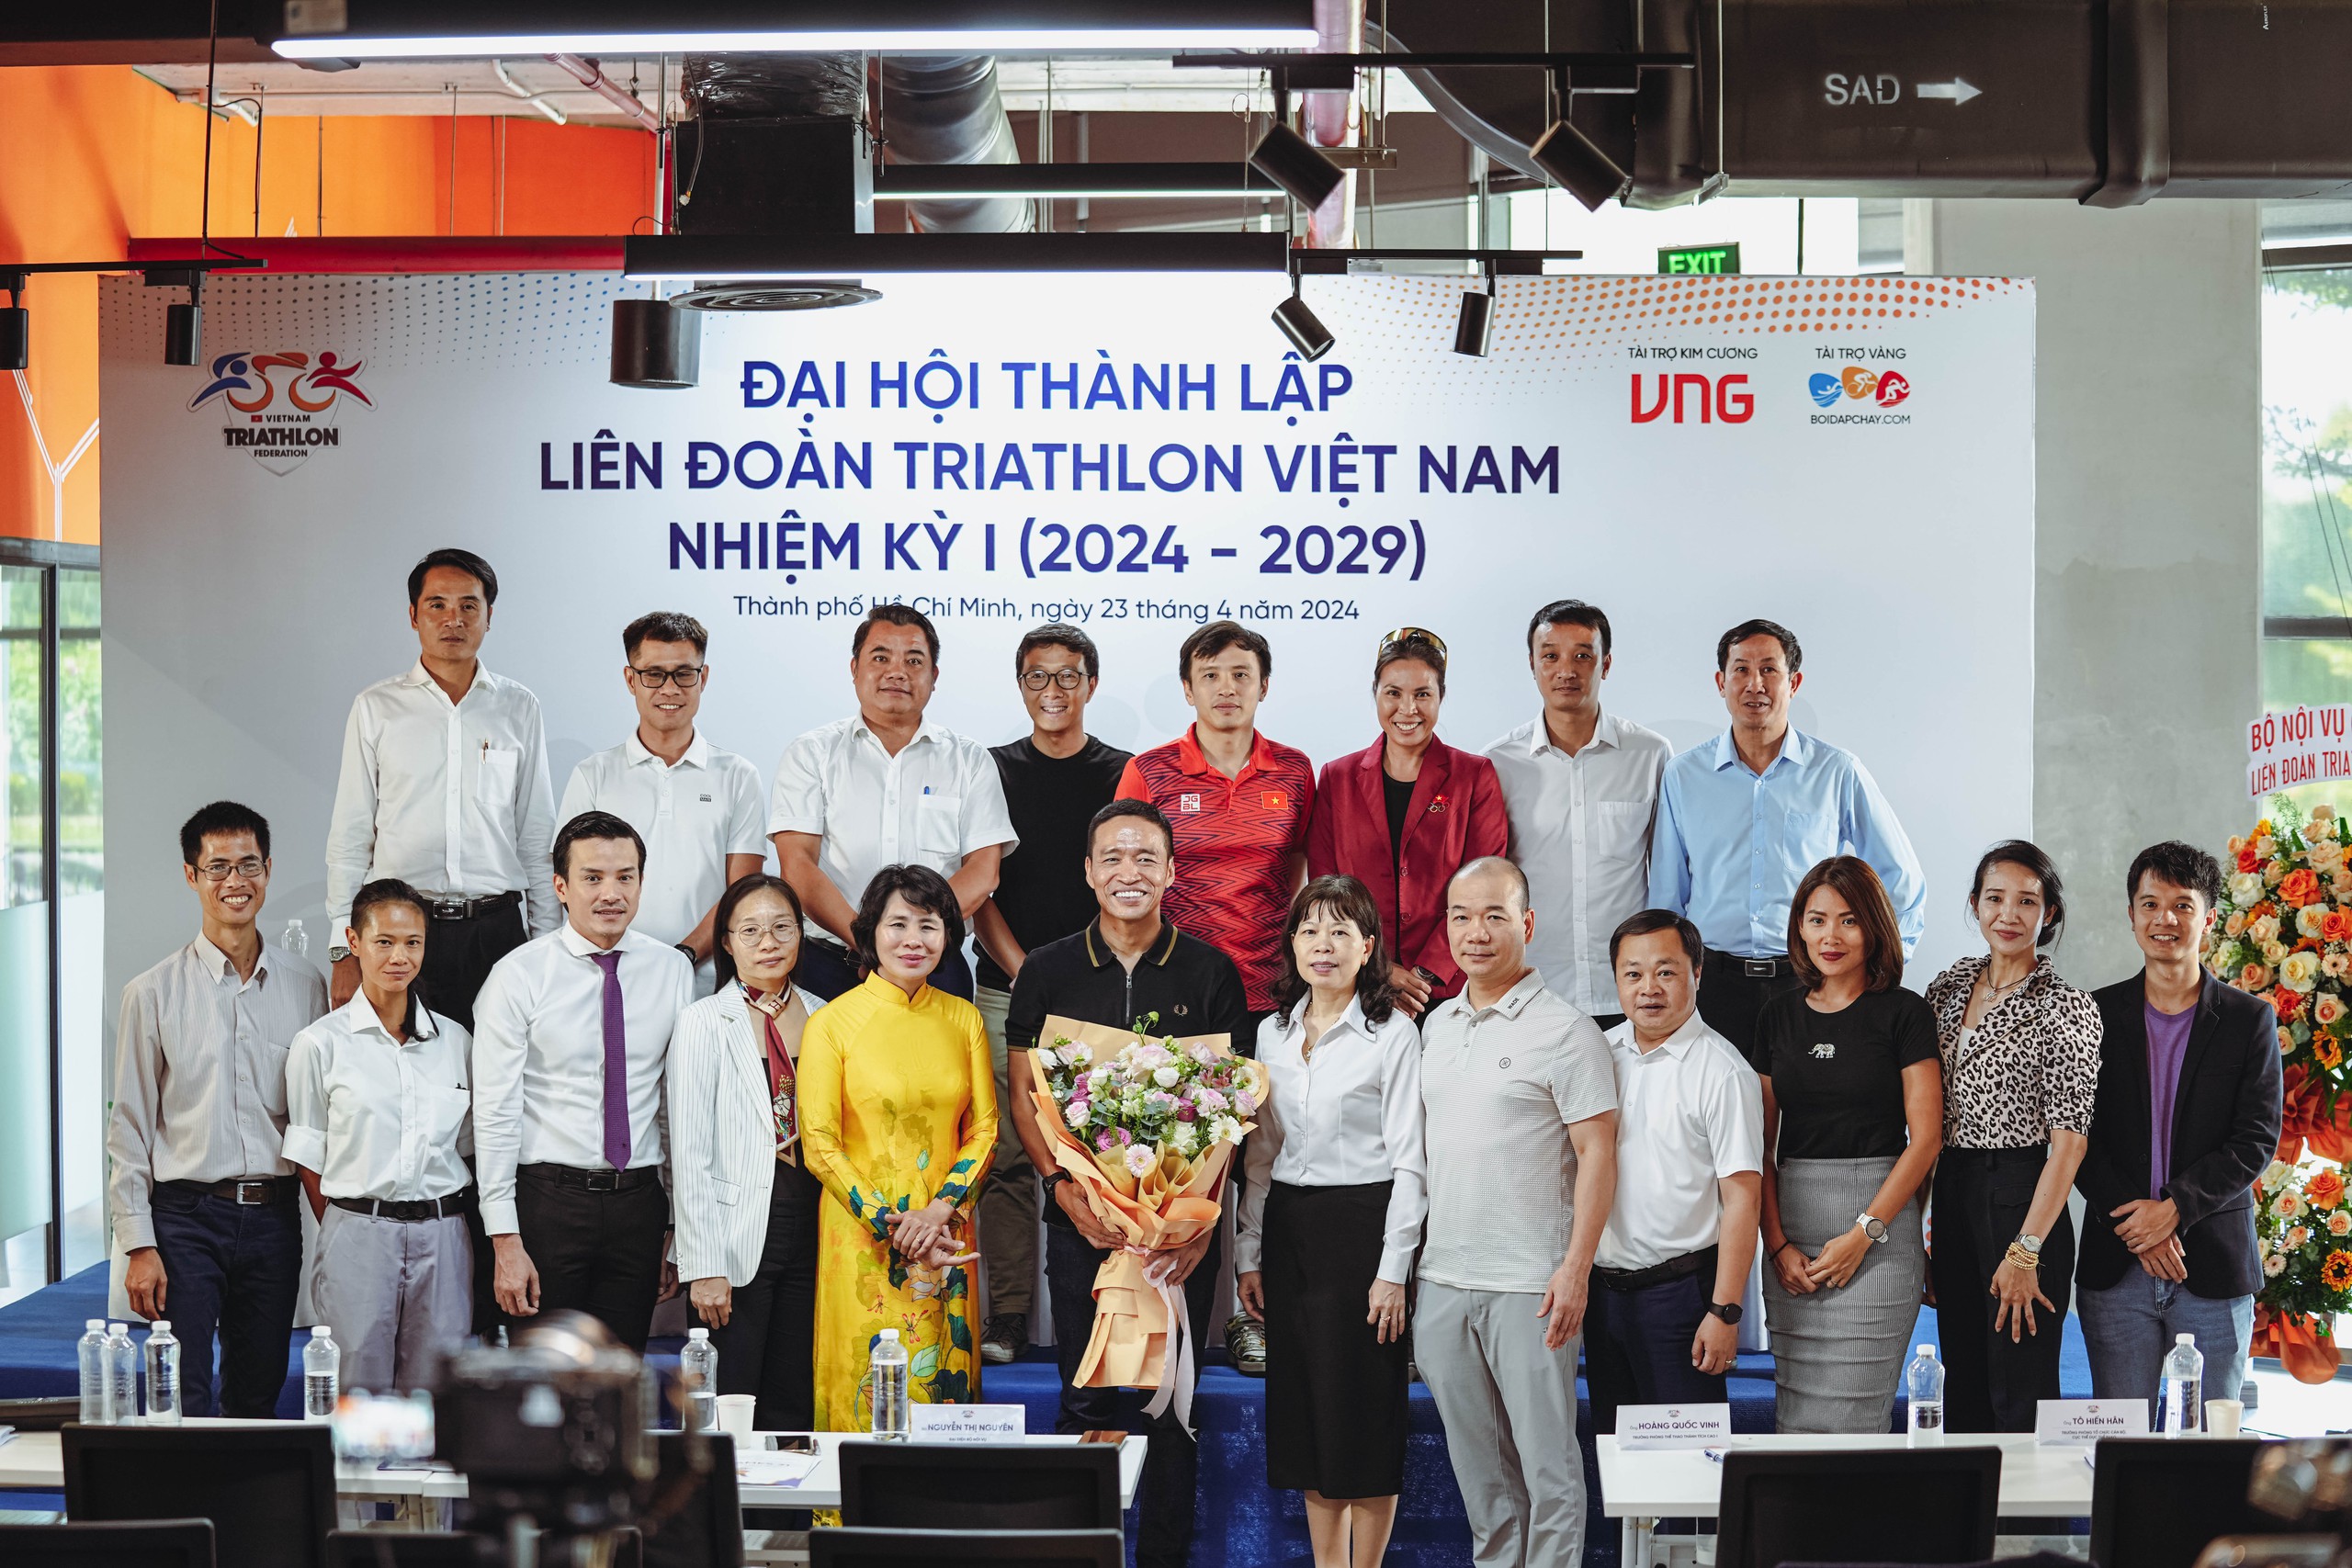 Ra mắt Ban Thường vụ Liên Đoàn Triathlon Việt Nam nhiệm kỳ I (2024 – 2029)